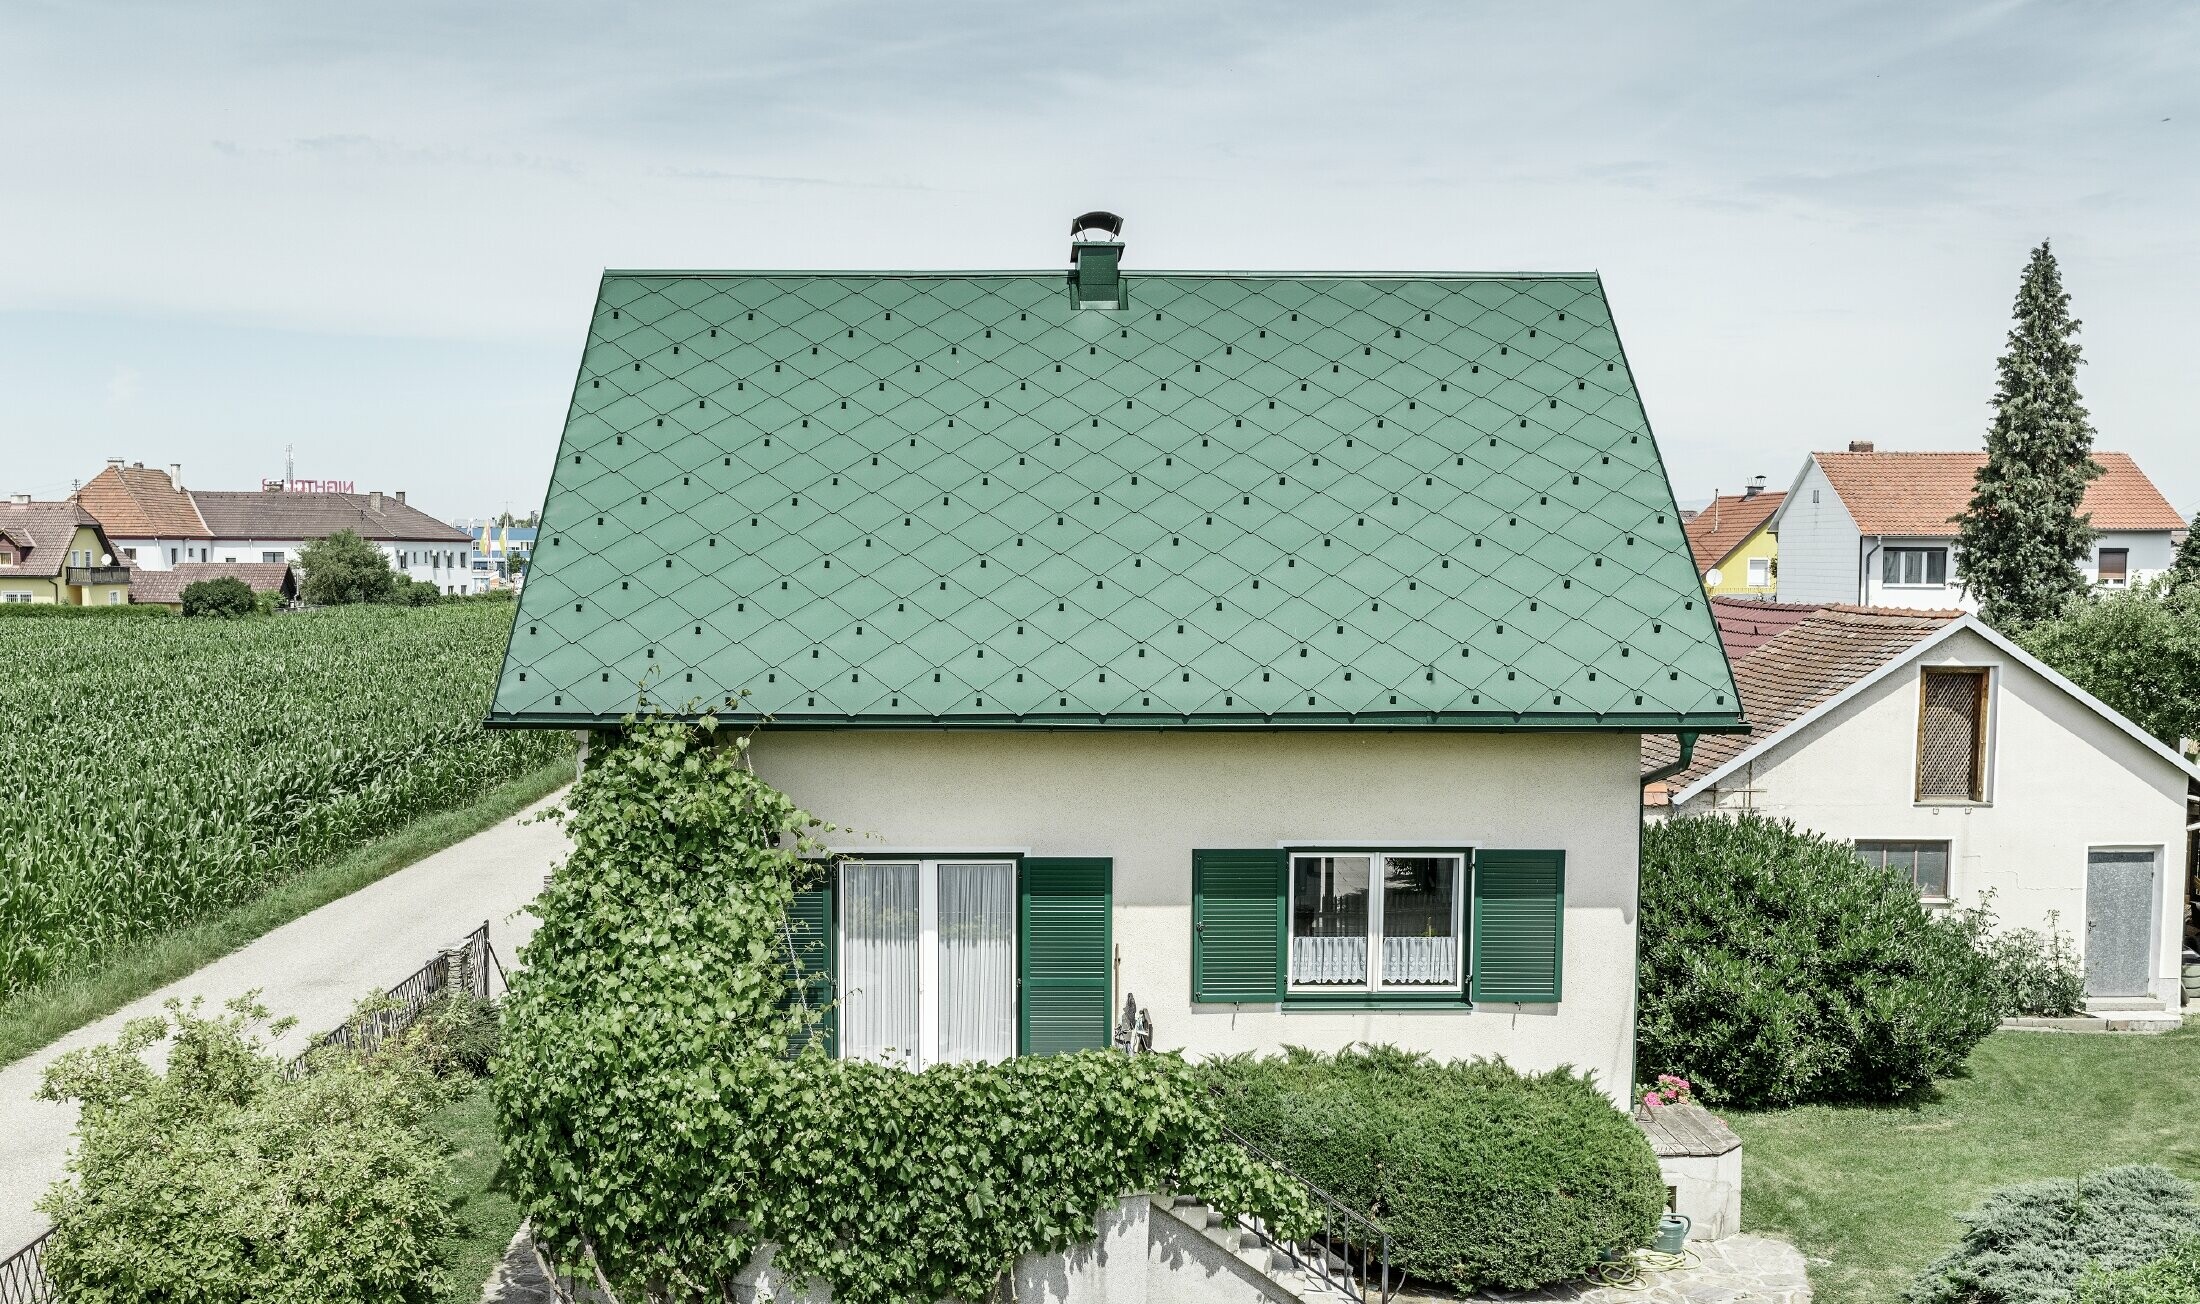 Klassisches Einfamilienhaus mit Satteldach mit einer Dacheindeckung aus Aluminium von in moosgrün mit grünen Fensterläden. Das Dach wurde mit PREFA Dachrauten 44 × 44 in P.10 Moosgrün eingedeckt.